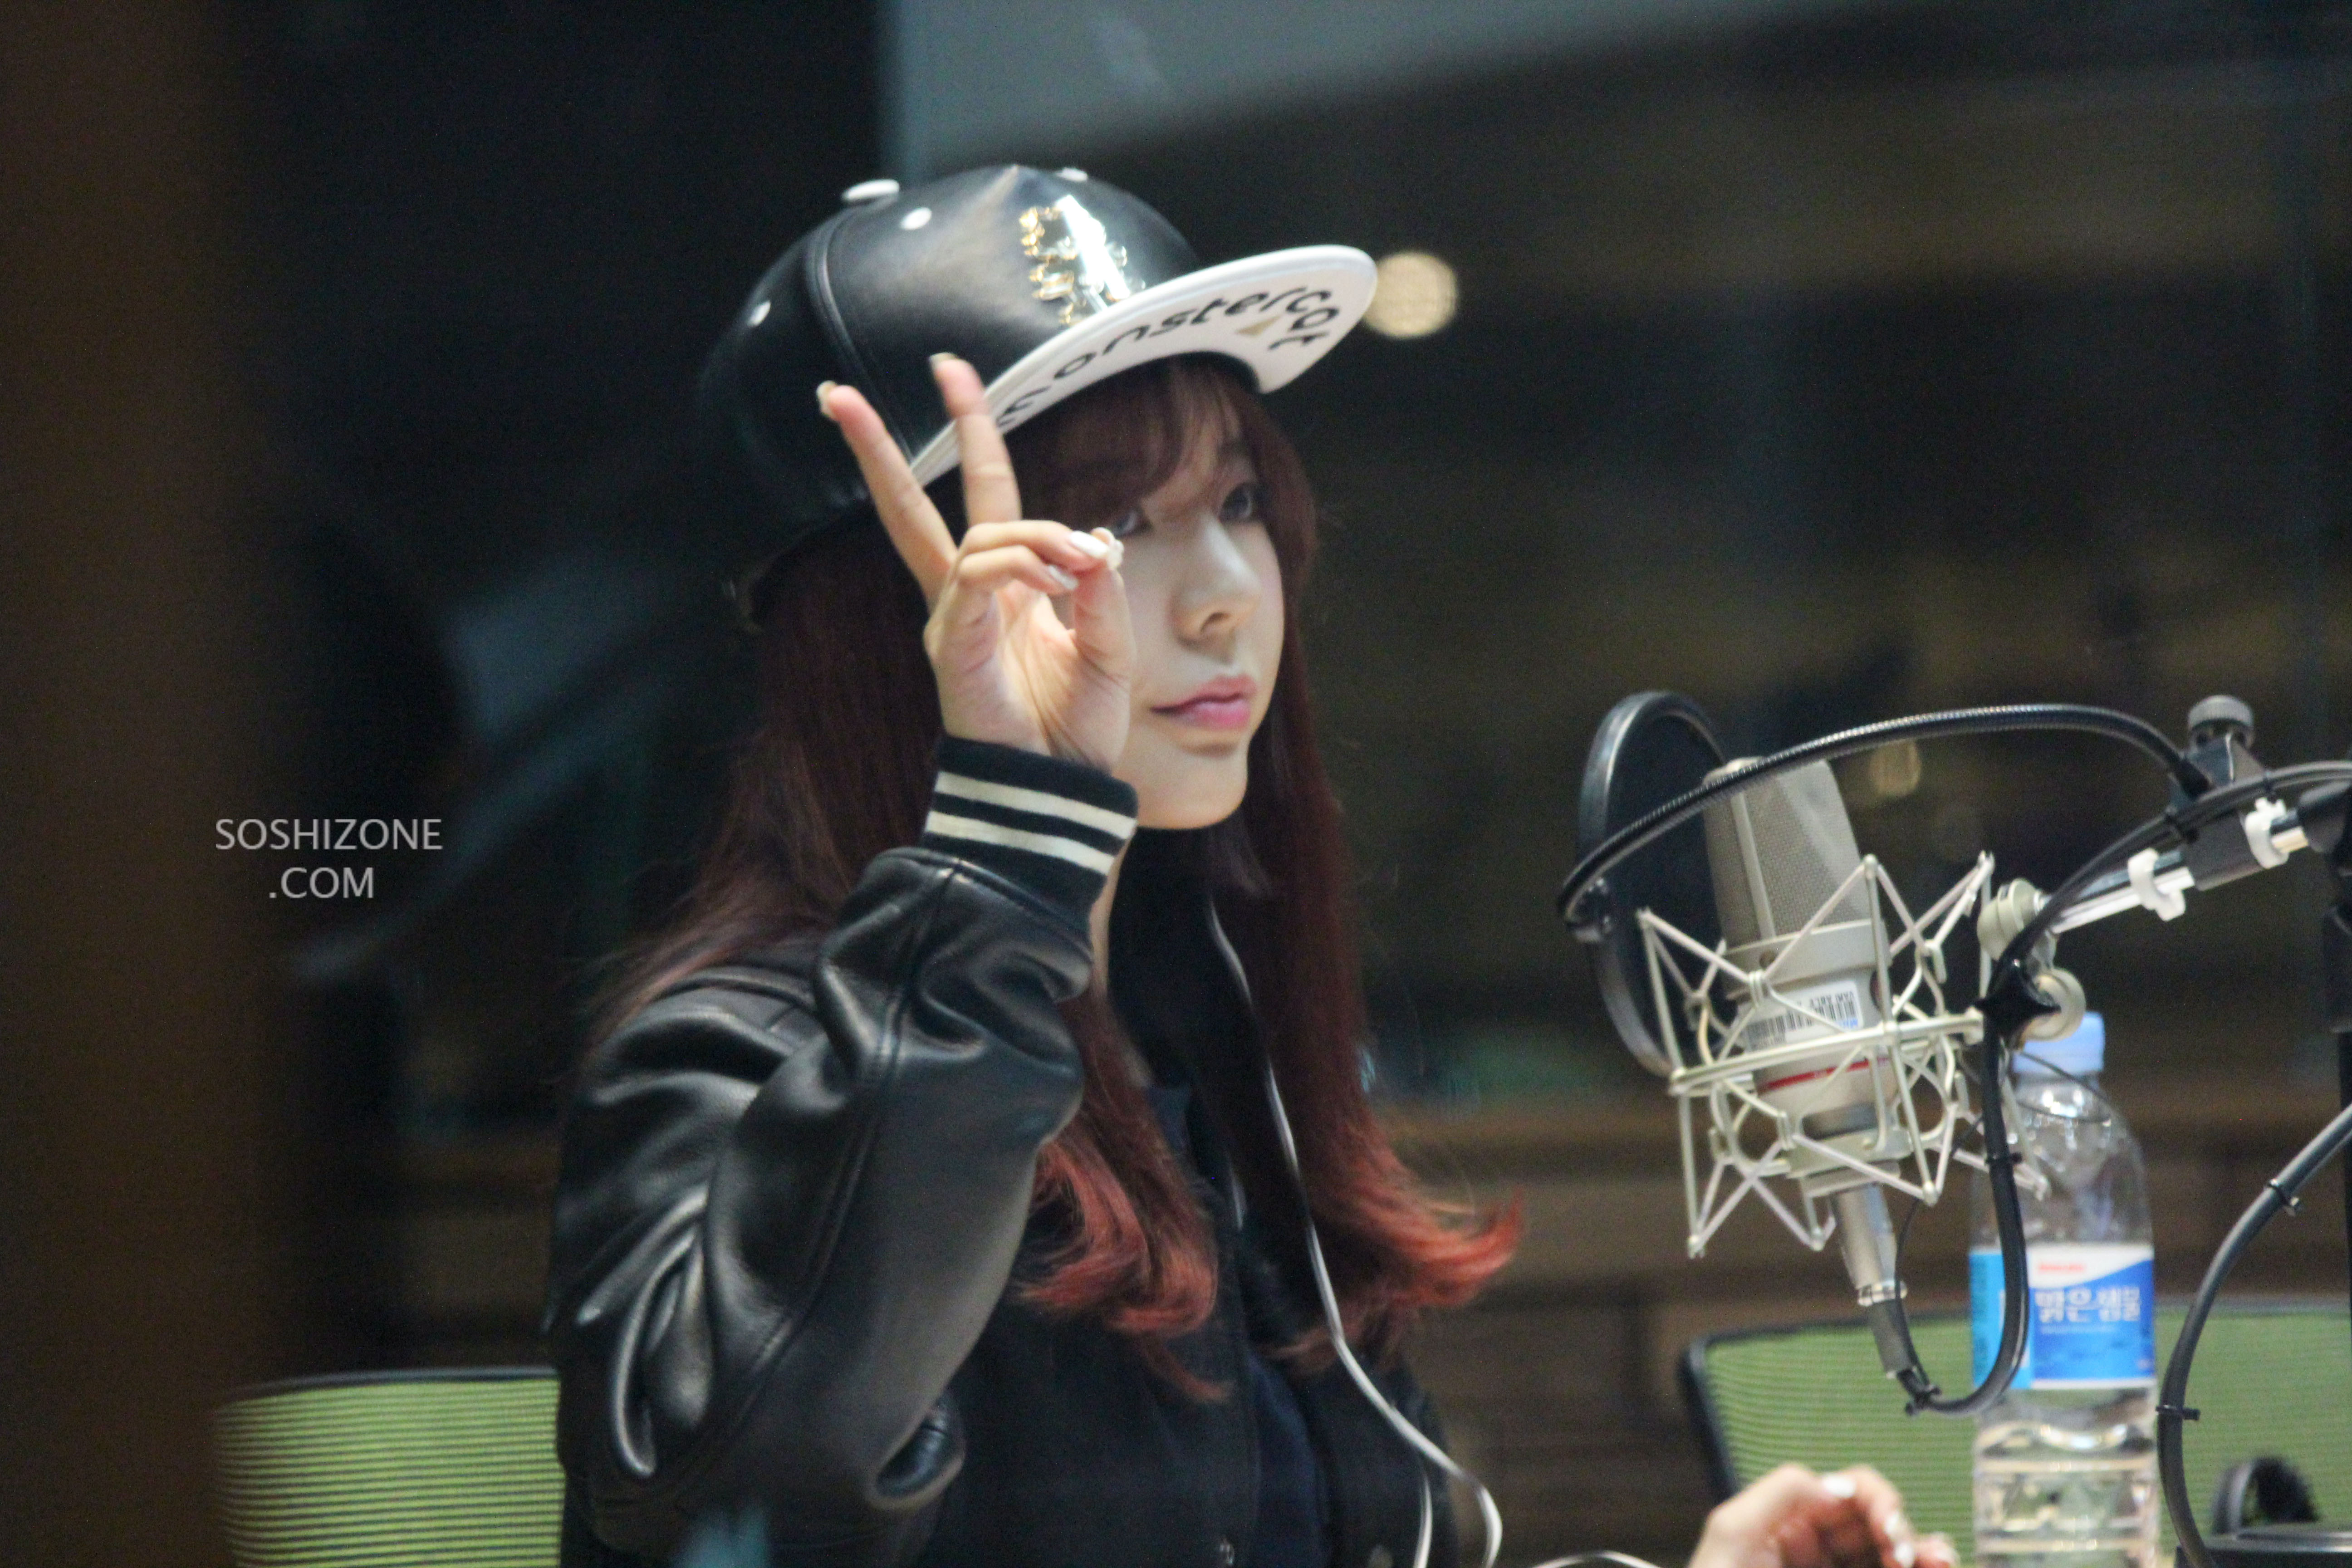 [OTHER][06-02-2015]Hình ảnh mới nhất từ DJ Sunny tại Radio MBC FM4U - "FM Date" - Page 22 235BDB4E55B79A282D8E75